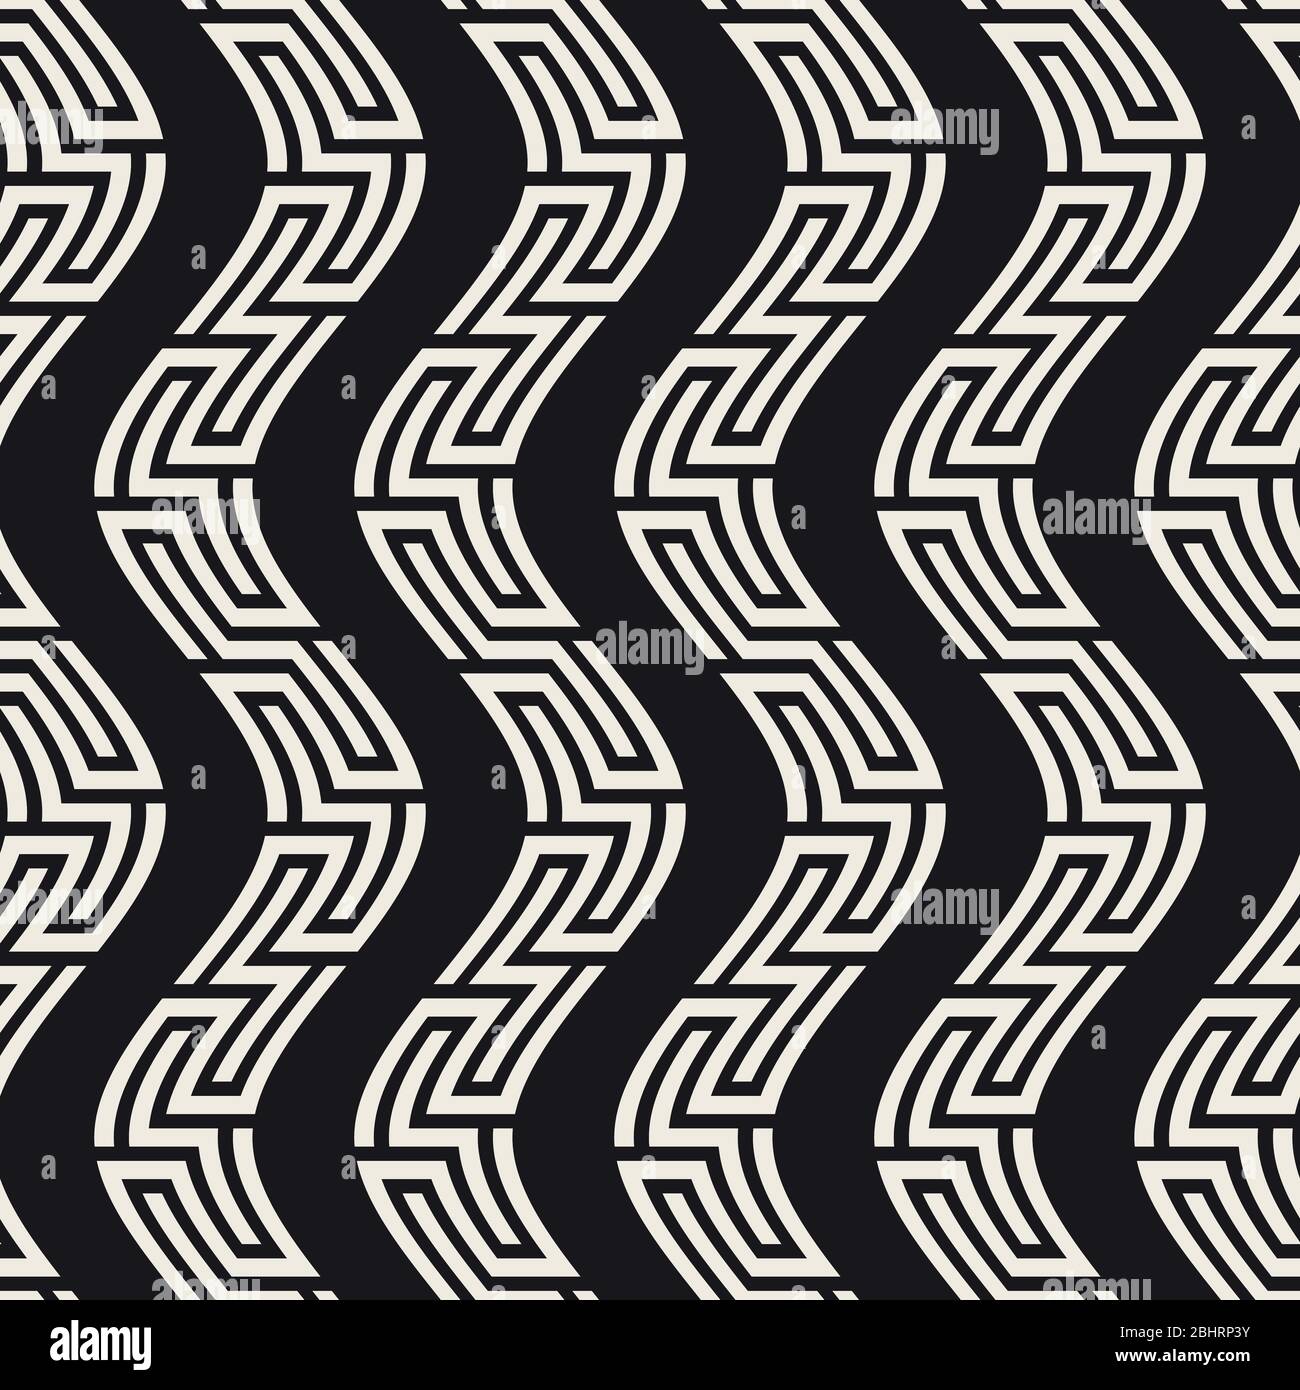 Vektor-Nahtloses Muster. Moderne, stilvolle abstrakte Textur. Sich wiederholende geometrische gewellte Ornamentlinien. Stock Vektor